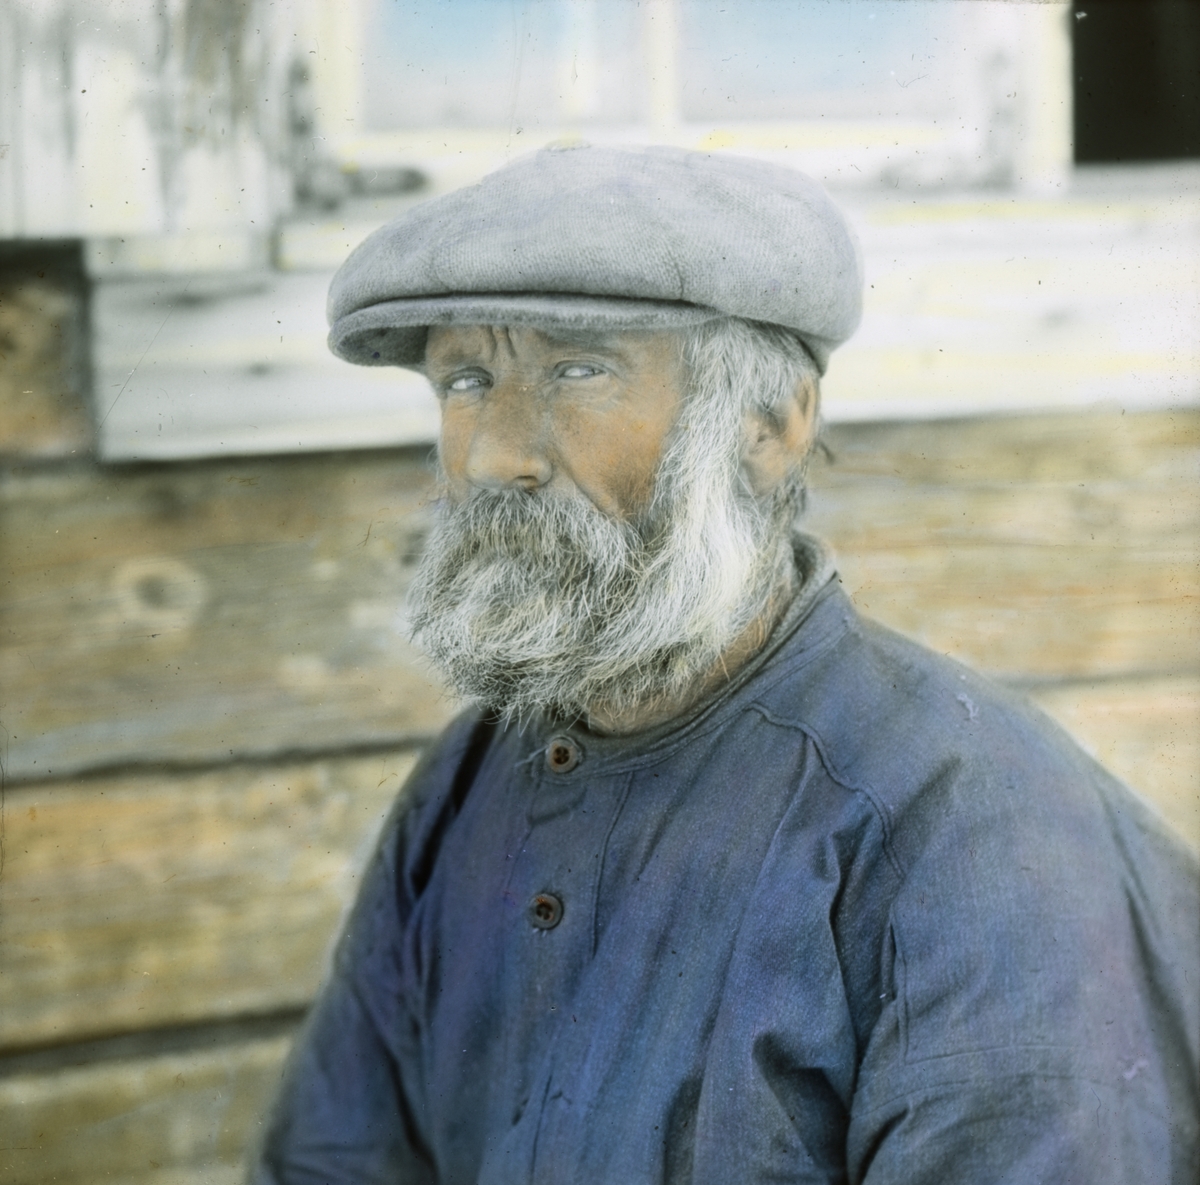 Håndkolorert dias. Portrett av en mann med grått skjegg og hår. Mannen er kledd i blå arbeidsskjorte og grå skyggelue.